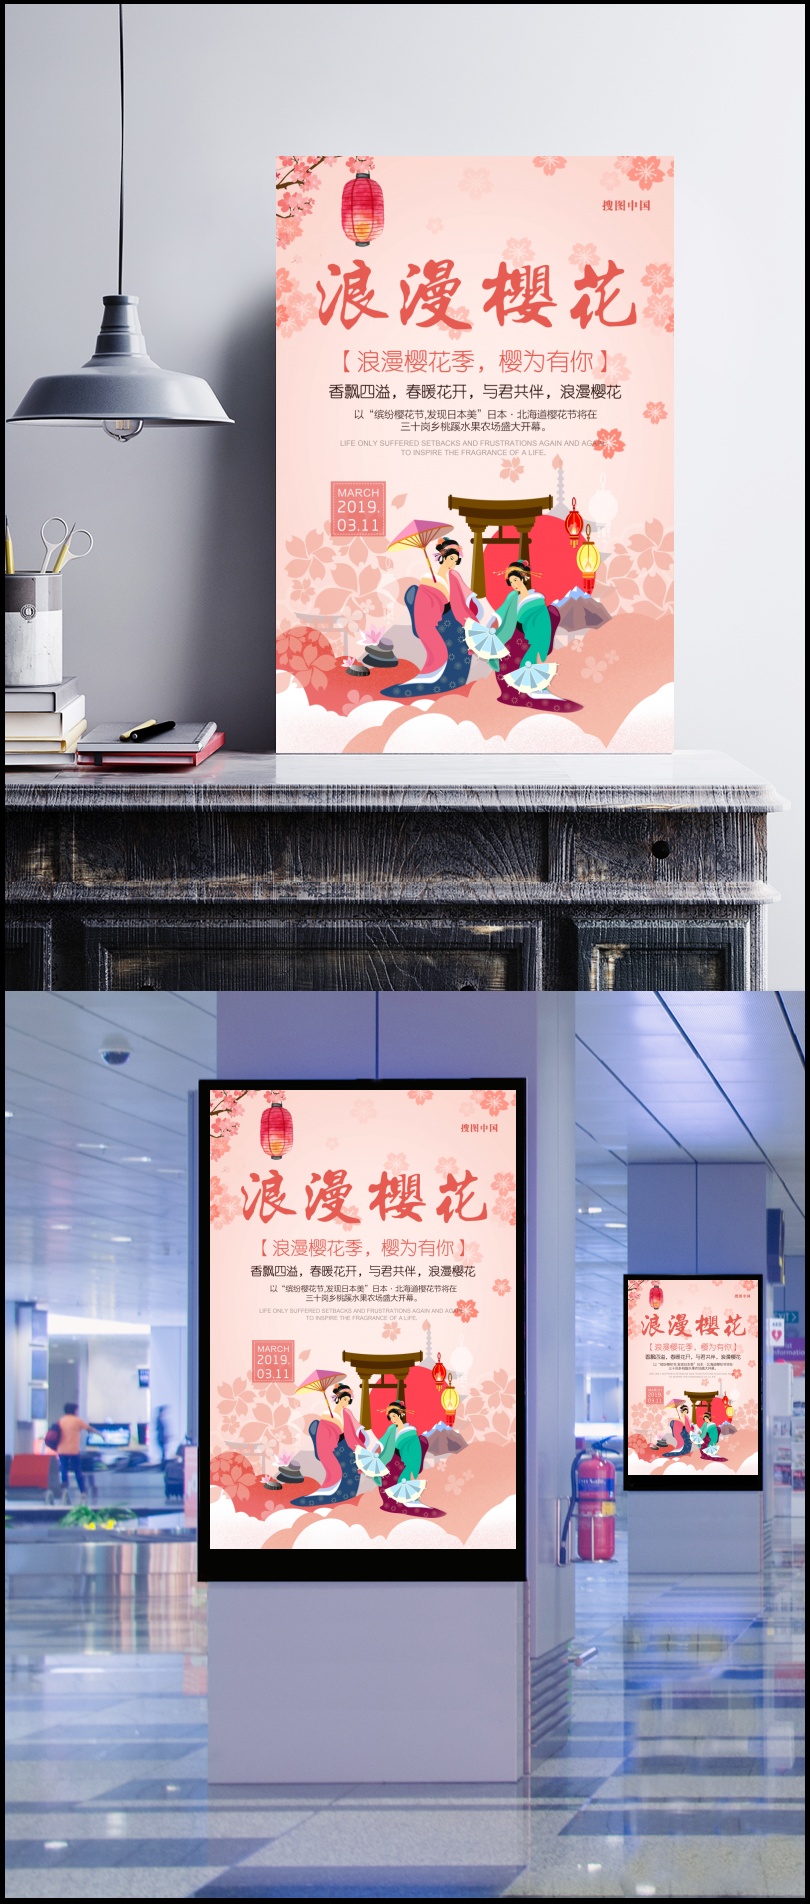 清新插画风格樱花节旅游海报设计